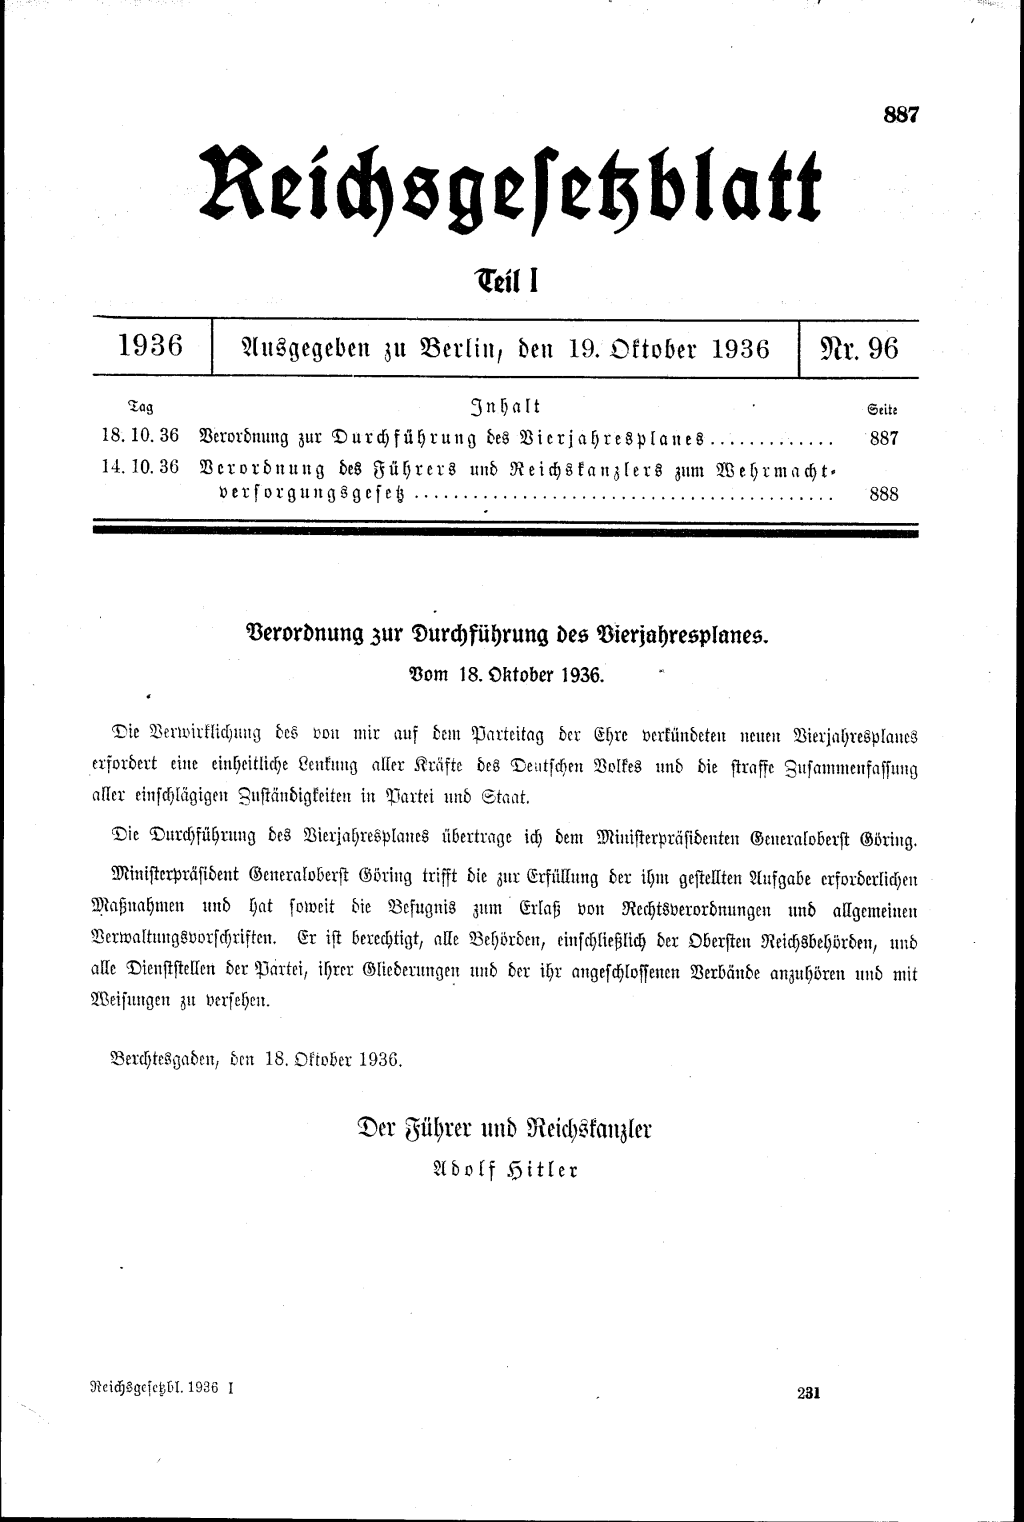 Reichsgesetzblatt vom 19. Oktober 1936: Verordnung zur Durchführung des Vierjahresplanes